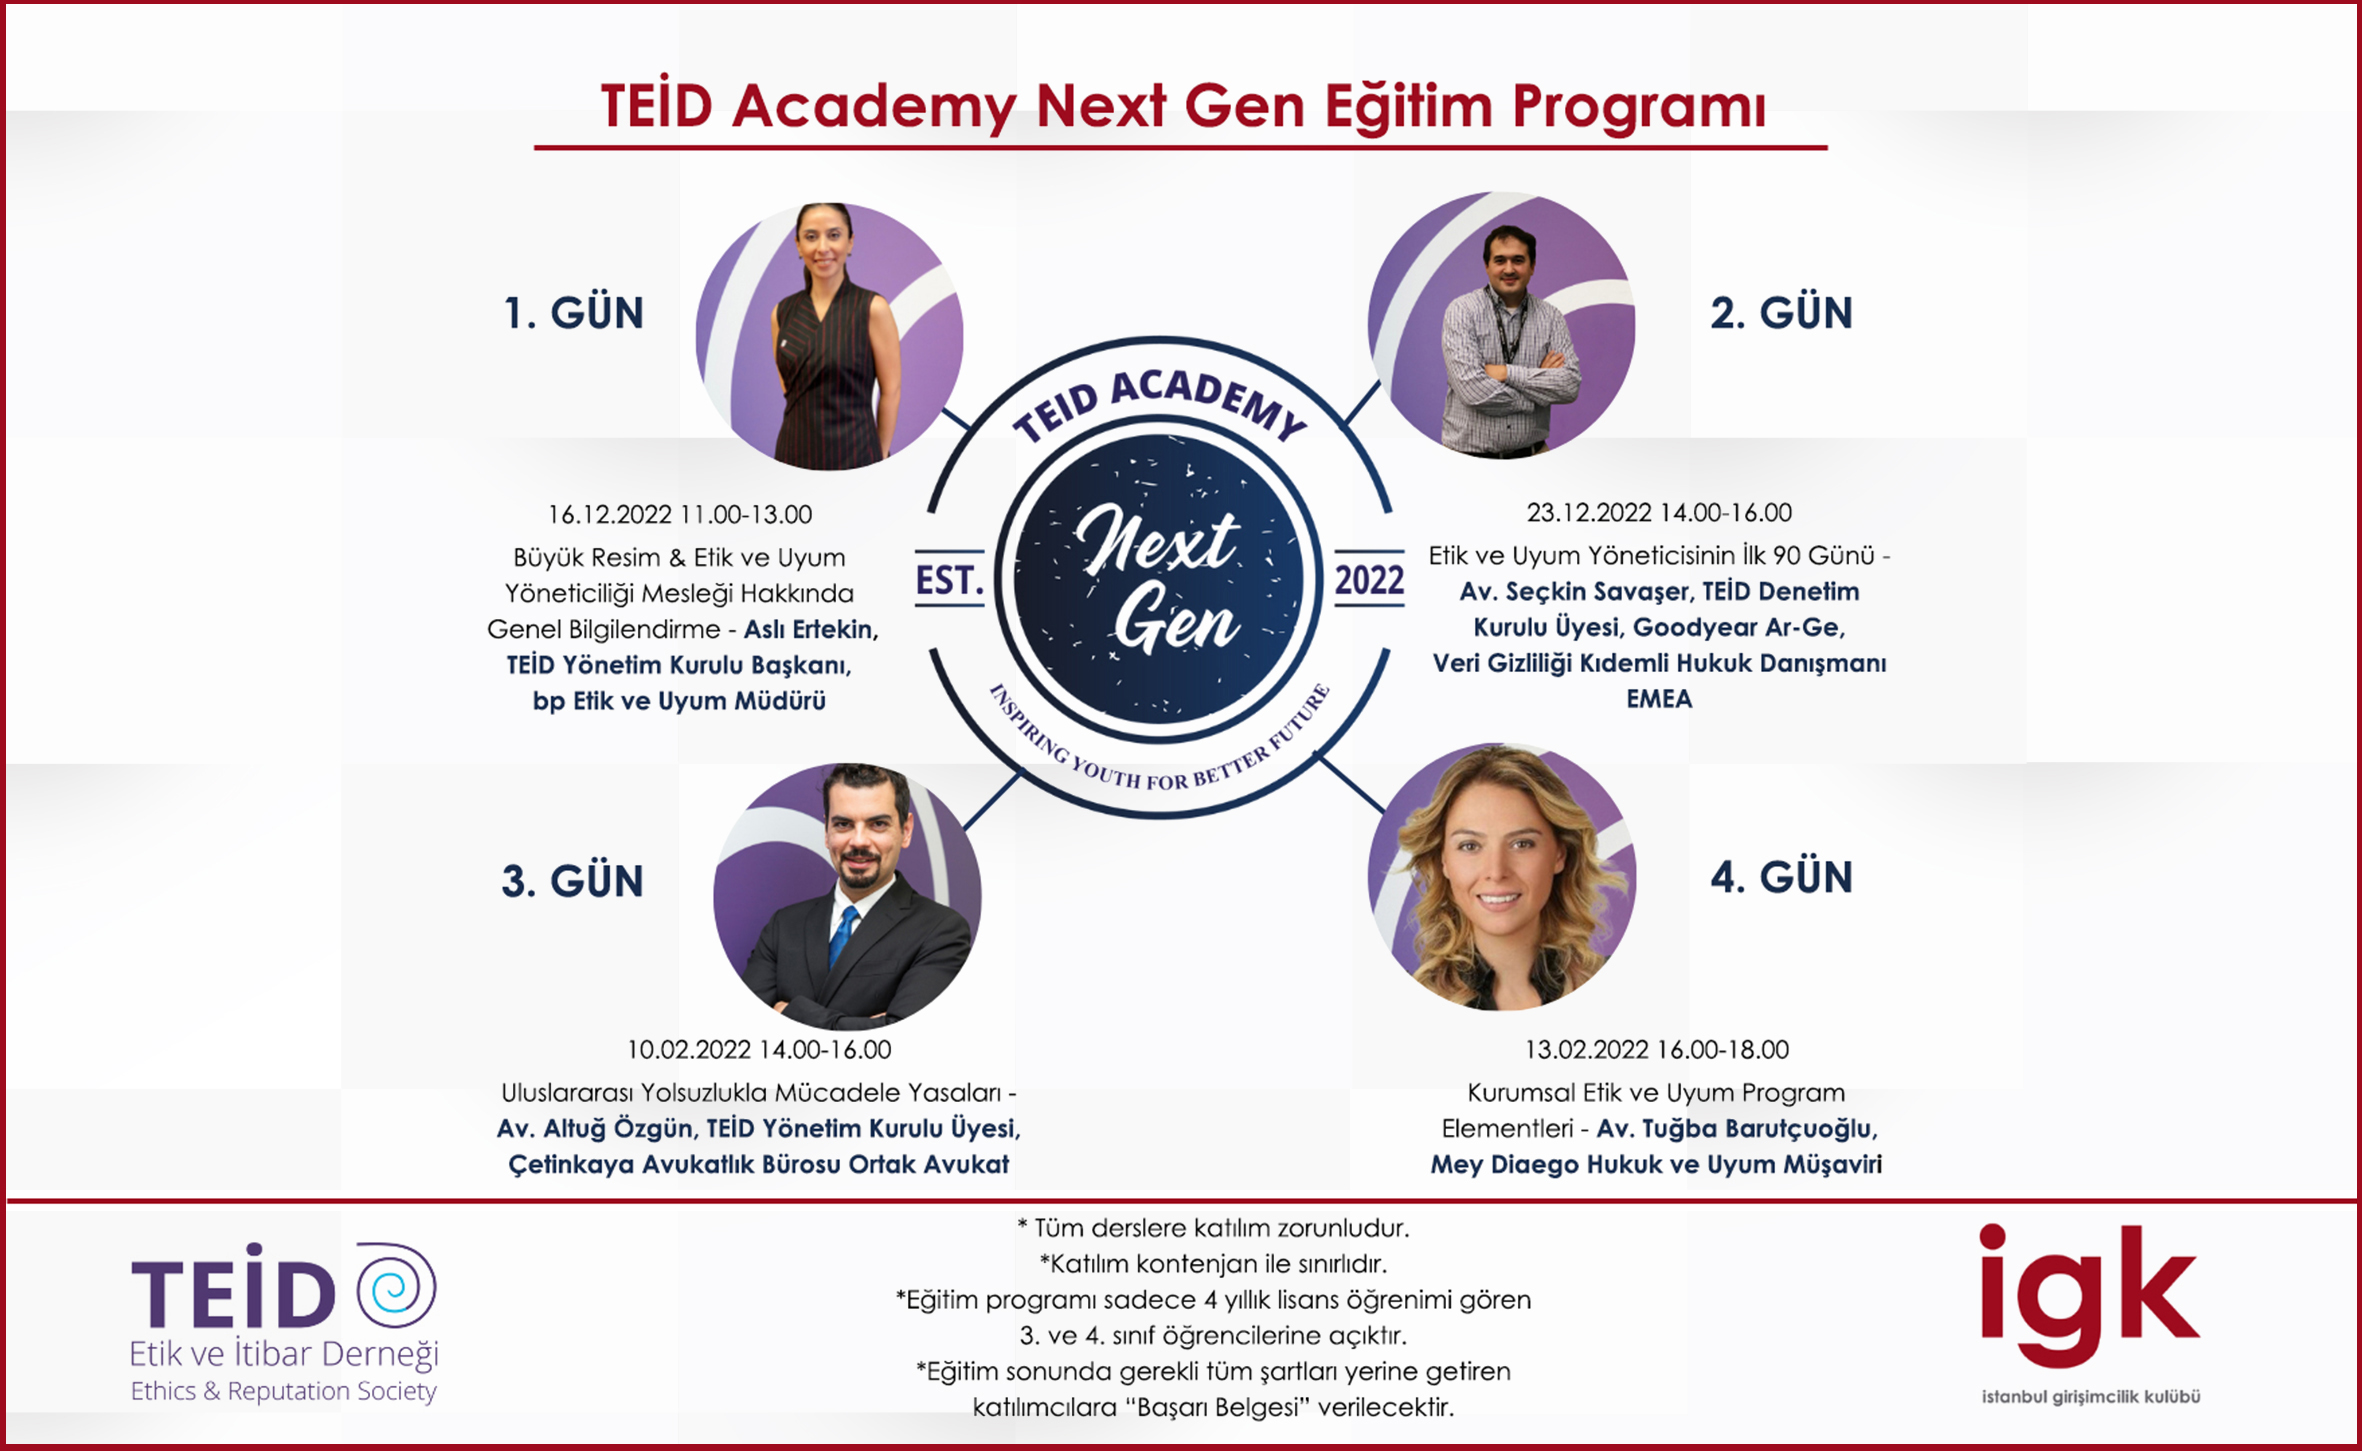 TEİD Academy Next Gen 1. Dönem